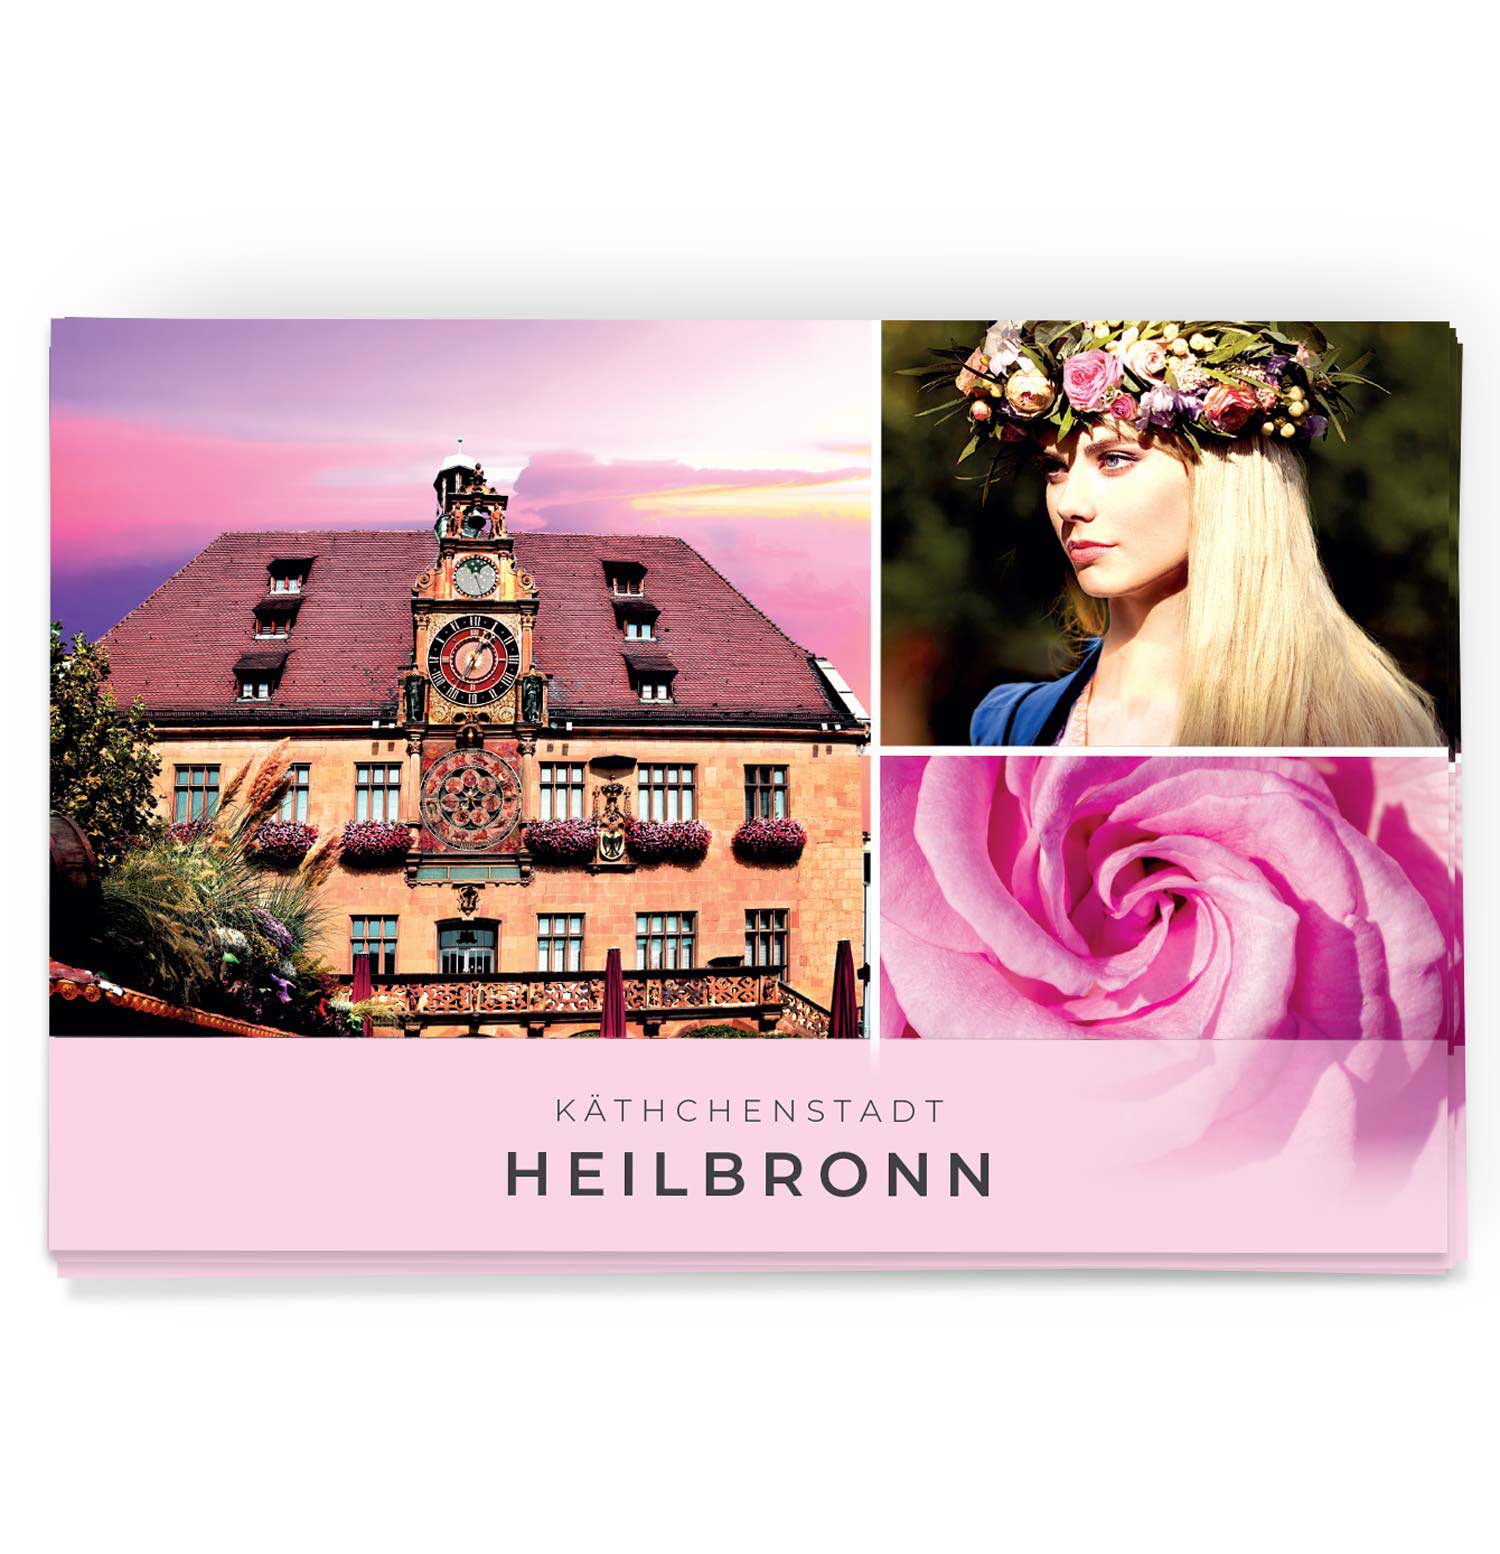 Schöne Postkarte von der Kätchenstadt Heilbronn und dem Heilbronner Rathaus